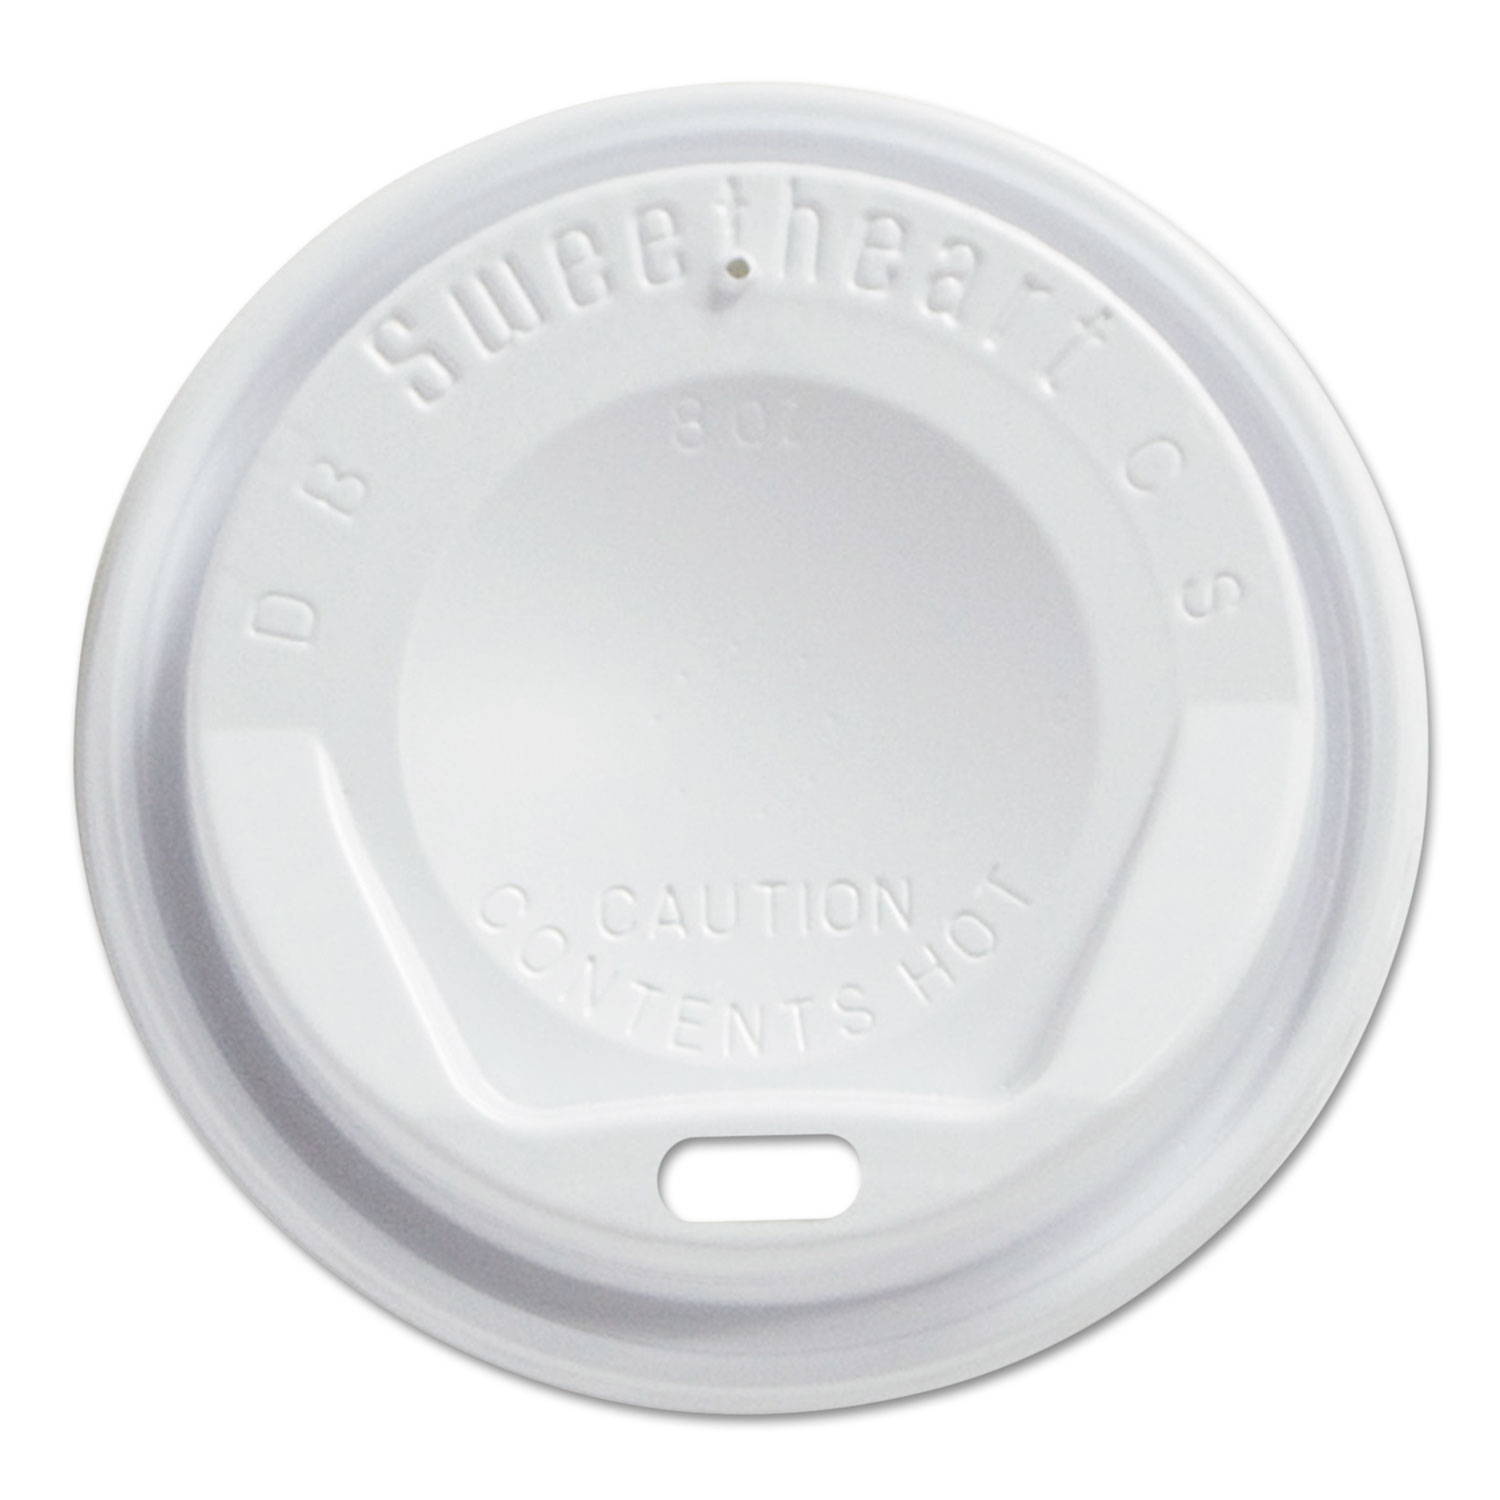  Dart LGX8R1-0007 Gourmet Dome Sip-Through Lids, 8oz Cups, White, 100/Sleeve, 10 Sleeves/Carton (SCCLGX8R1) 